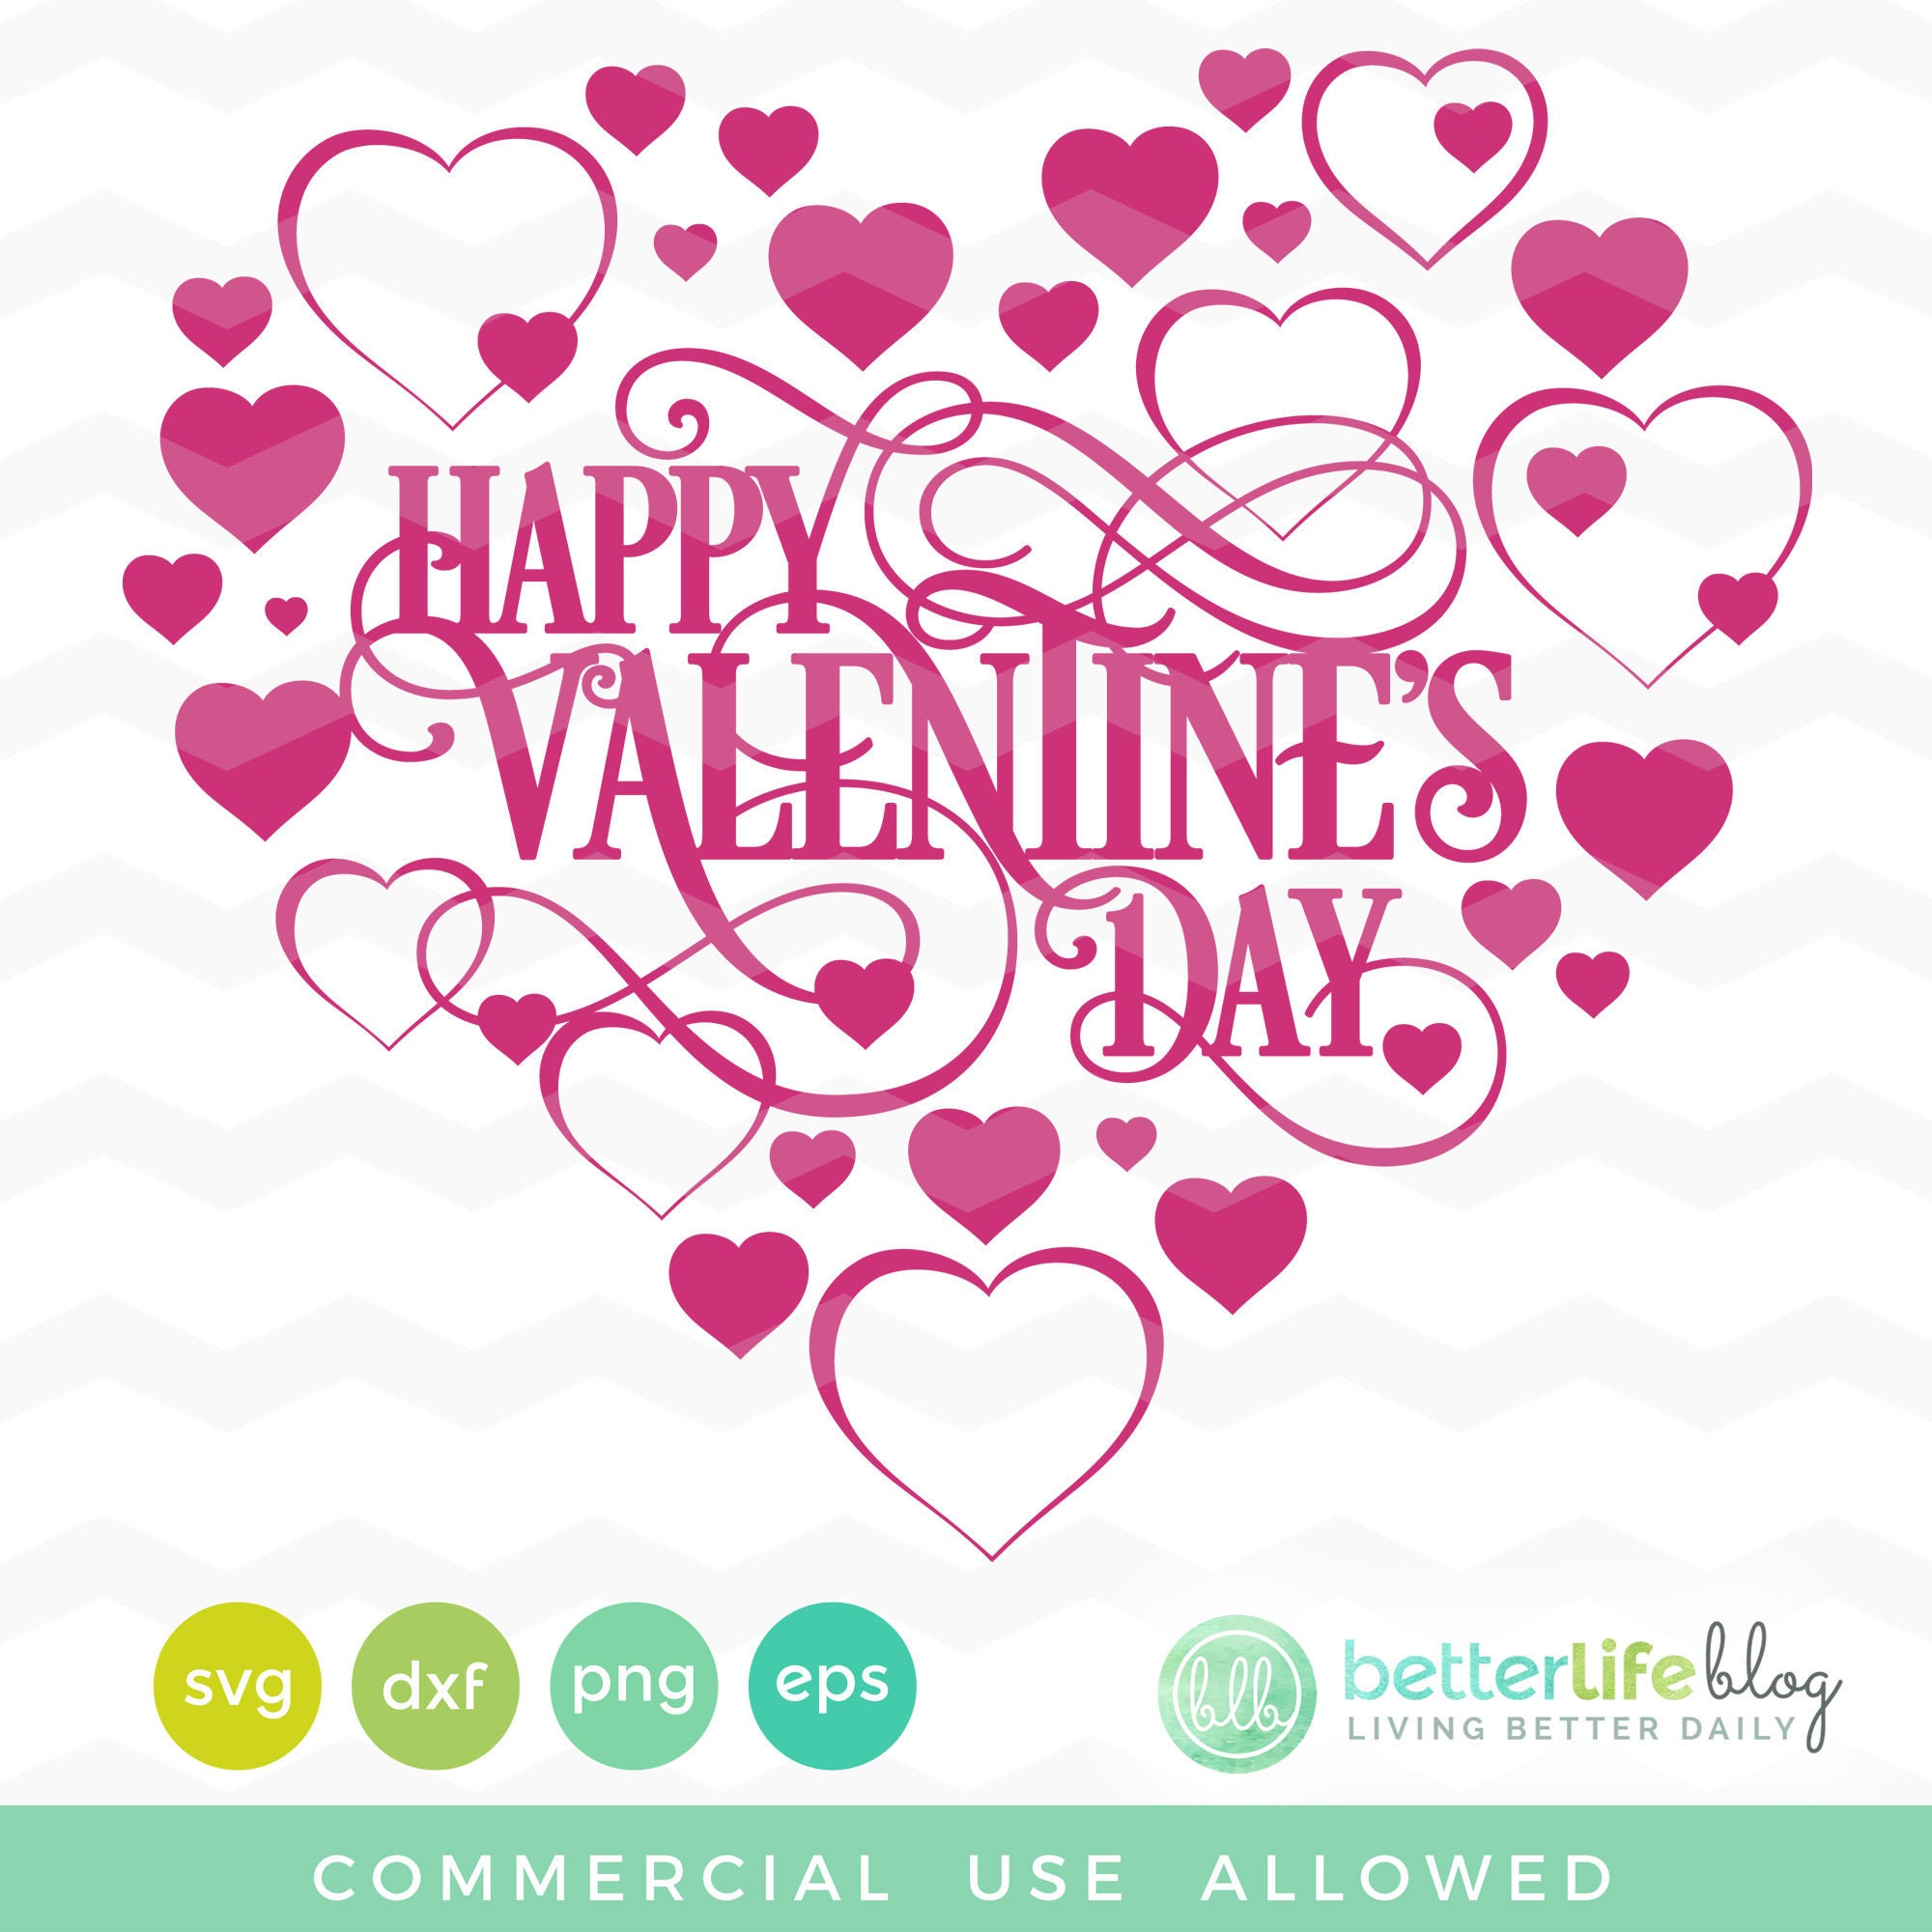 Happy Valentine's Day SVG File: Valentine's Day SVG | Etsy